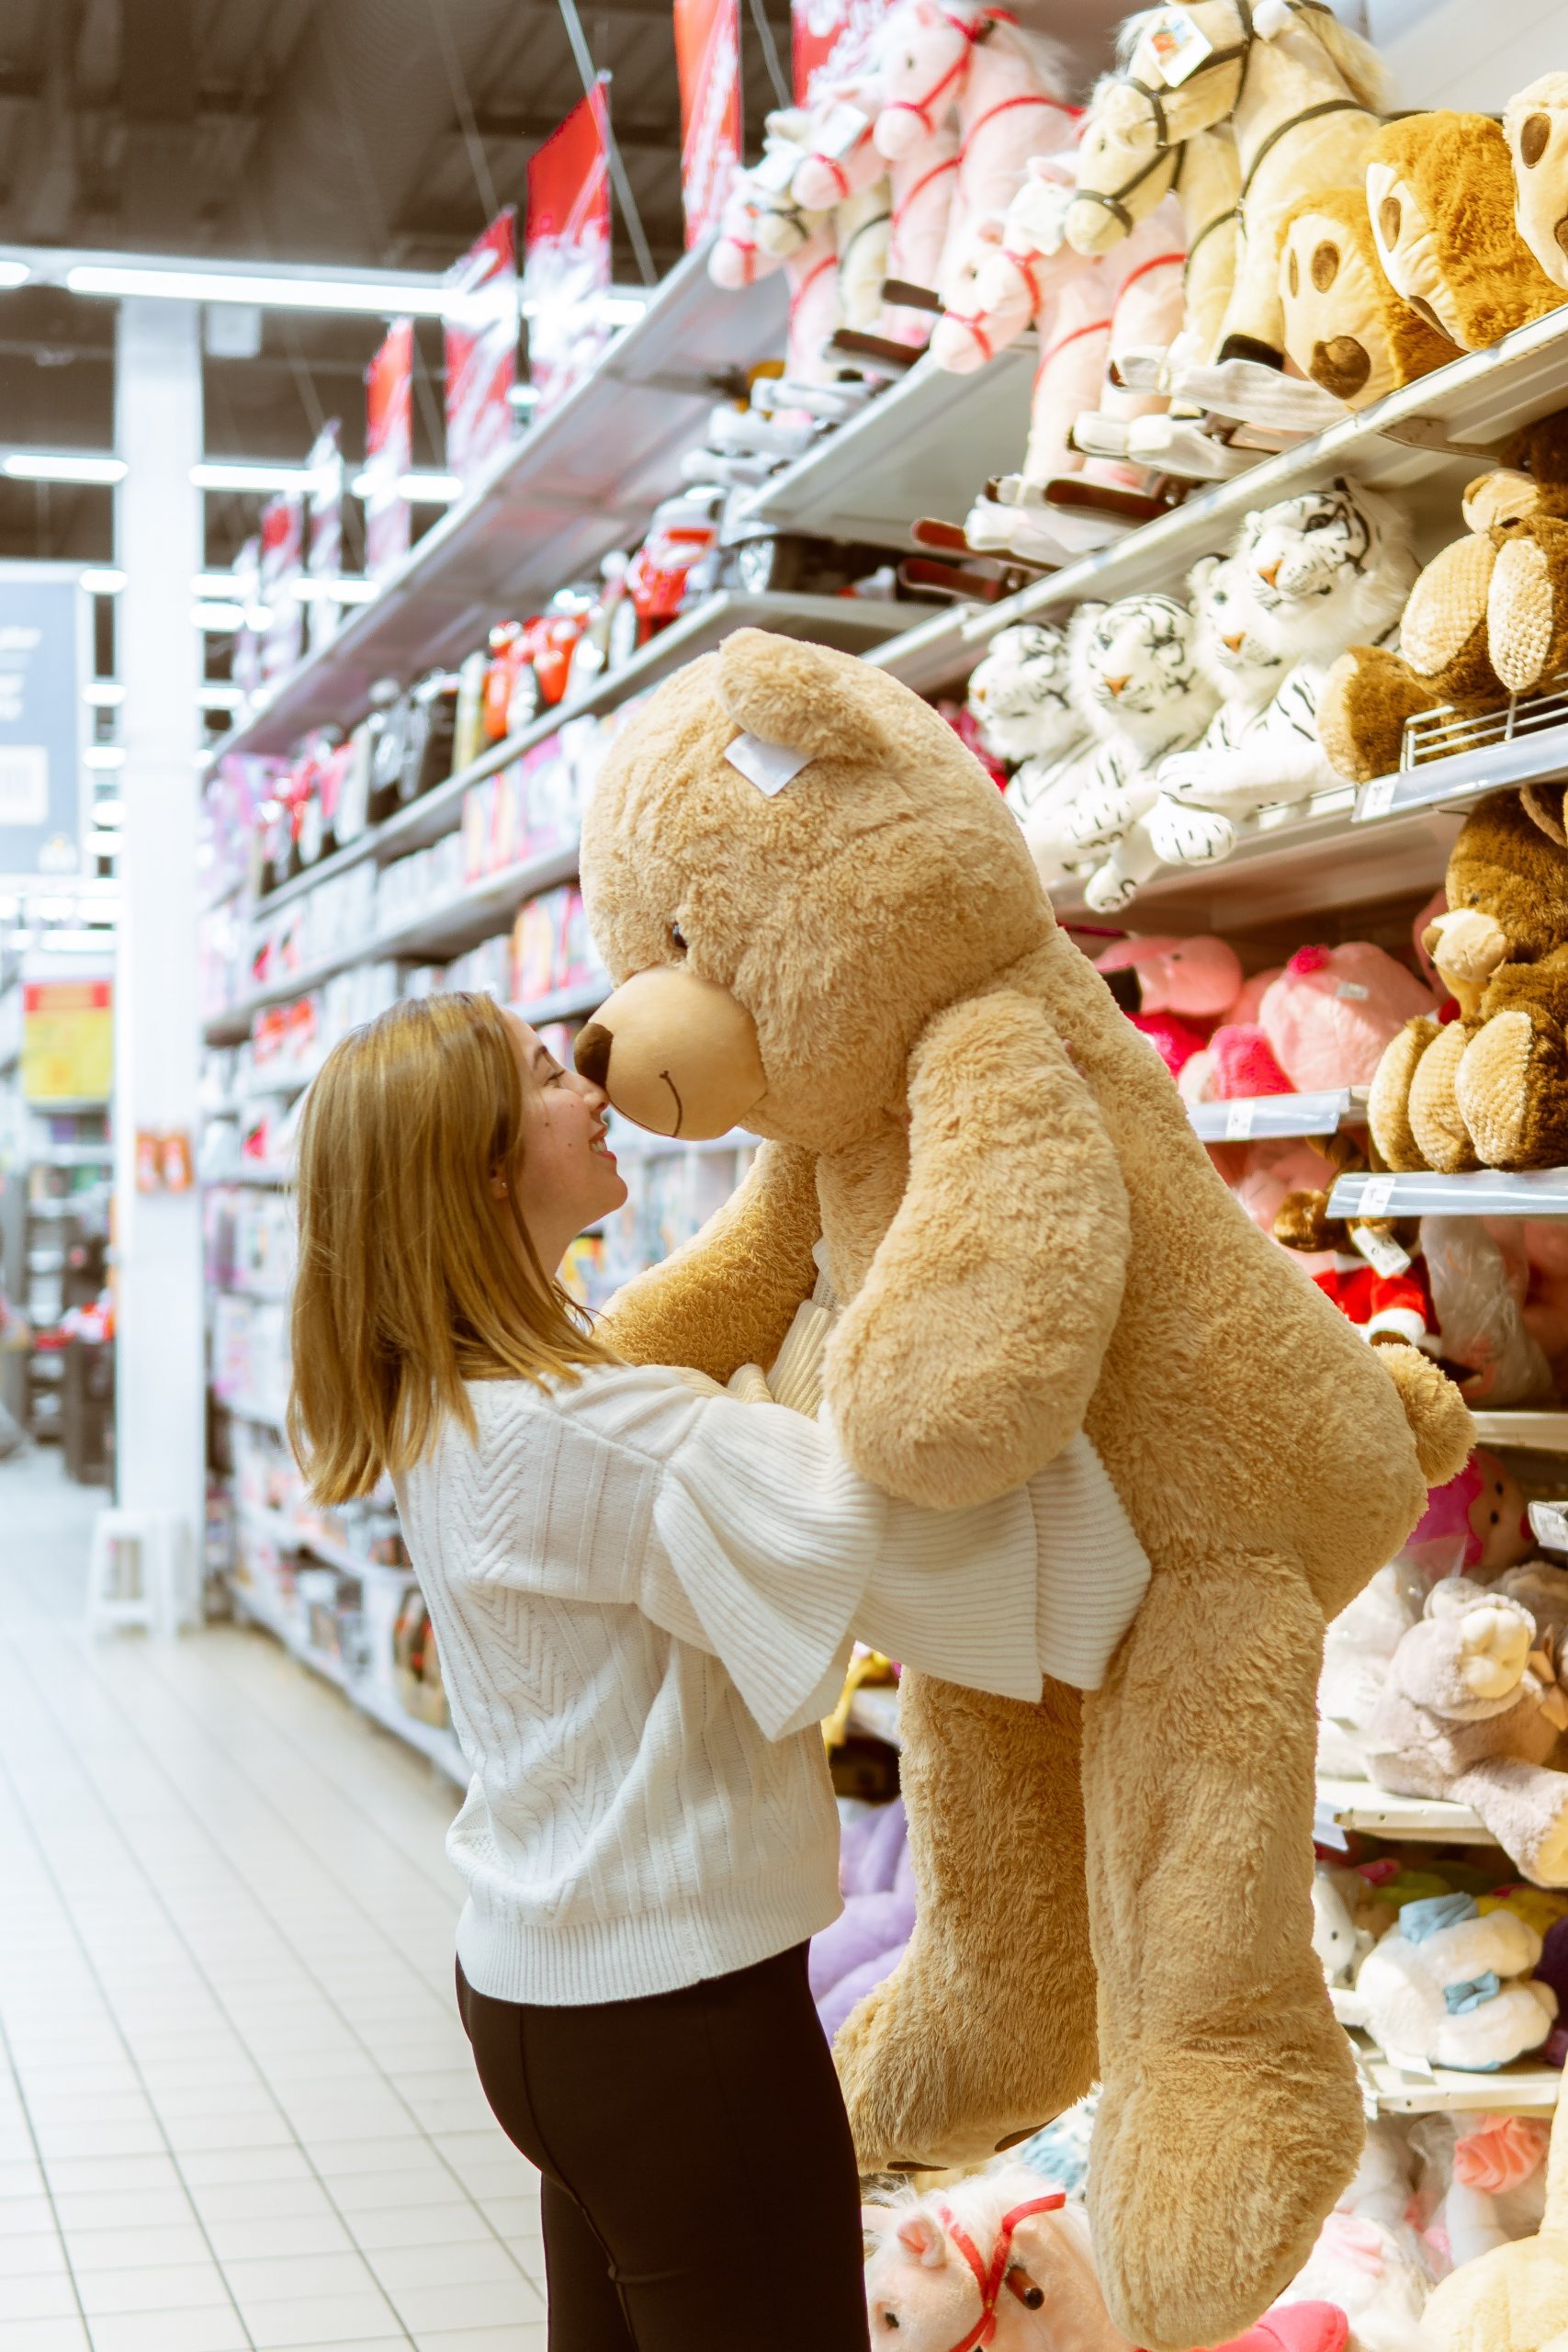 Das Bild zeigt eine junge Frau mit einem Teddybär